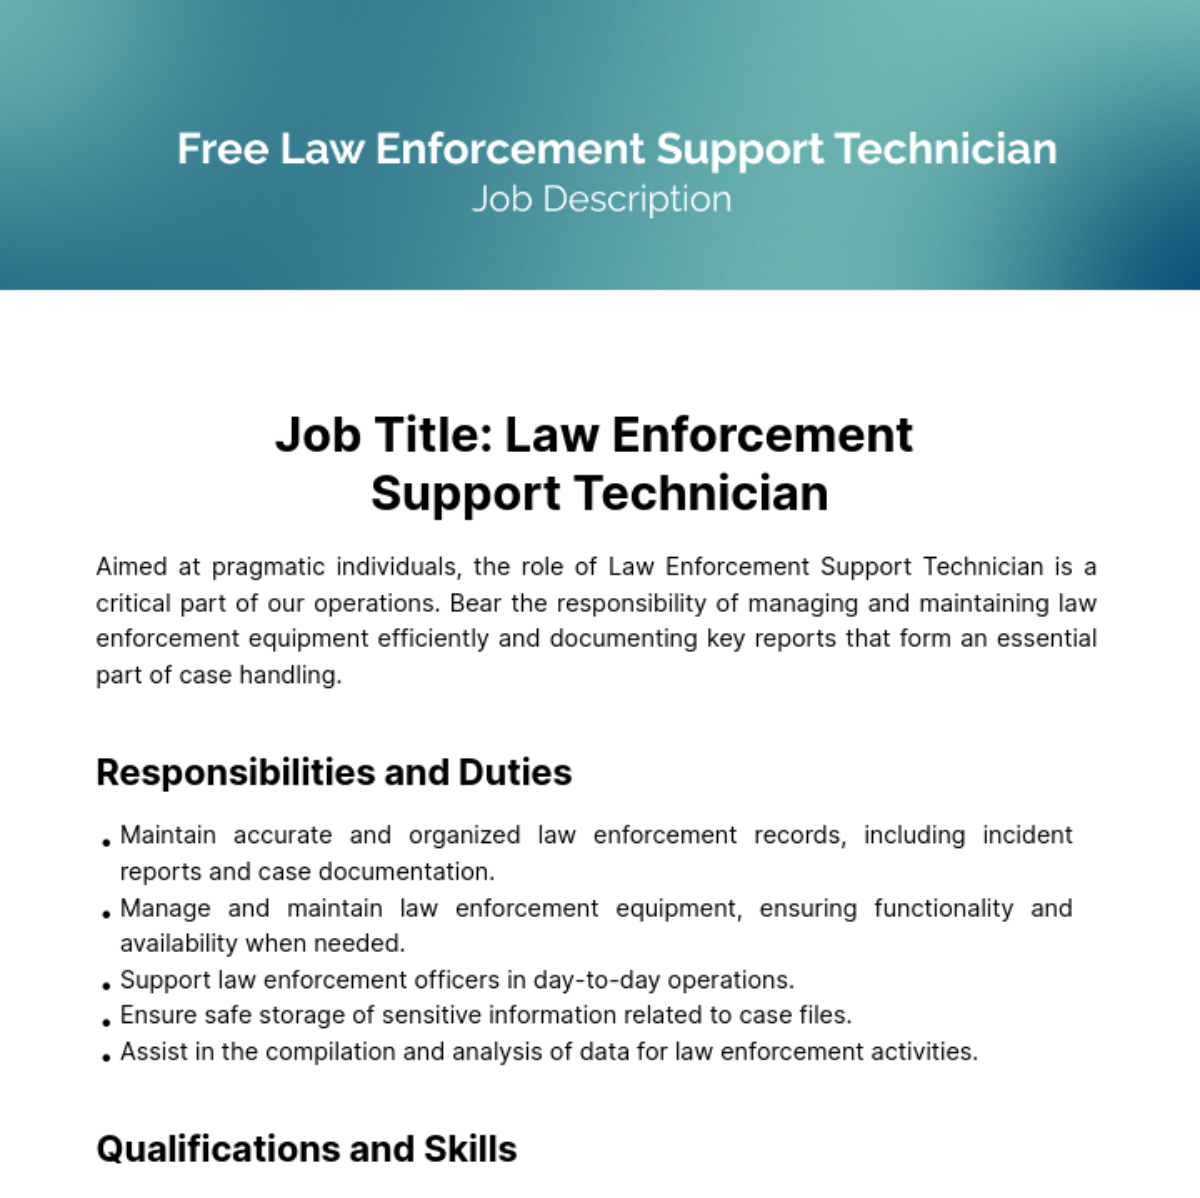 Free Law Enforcement Support Technician Job Description Template